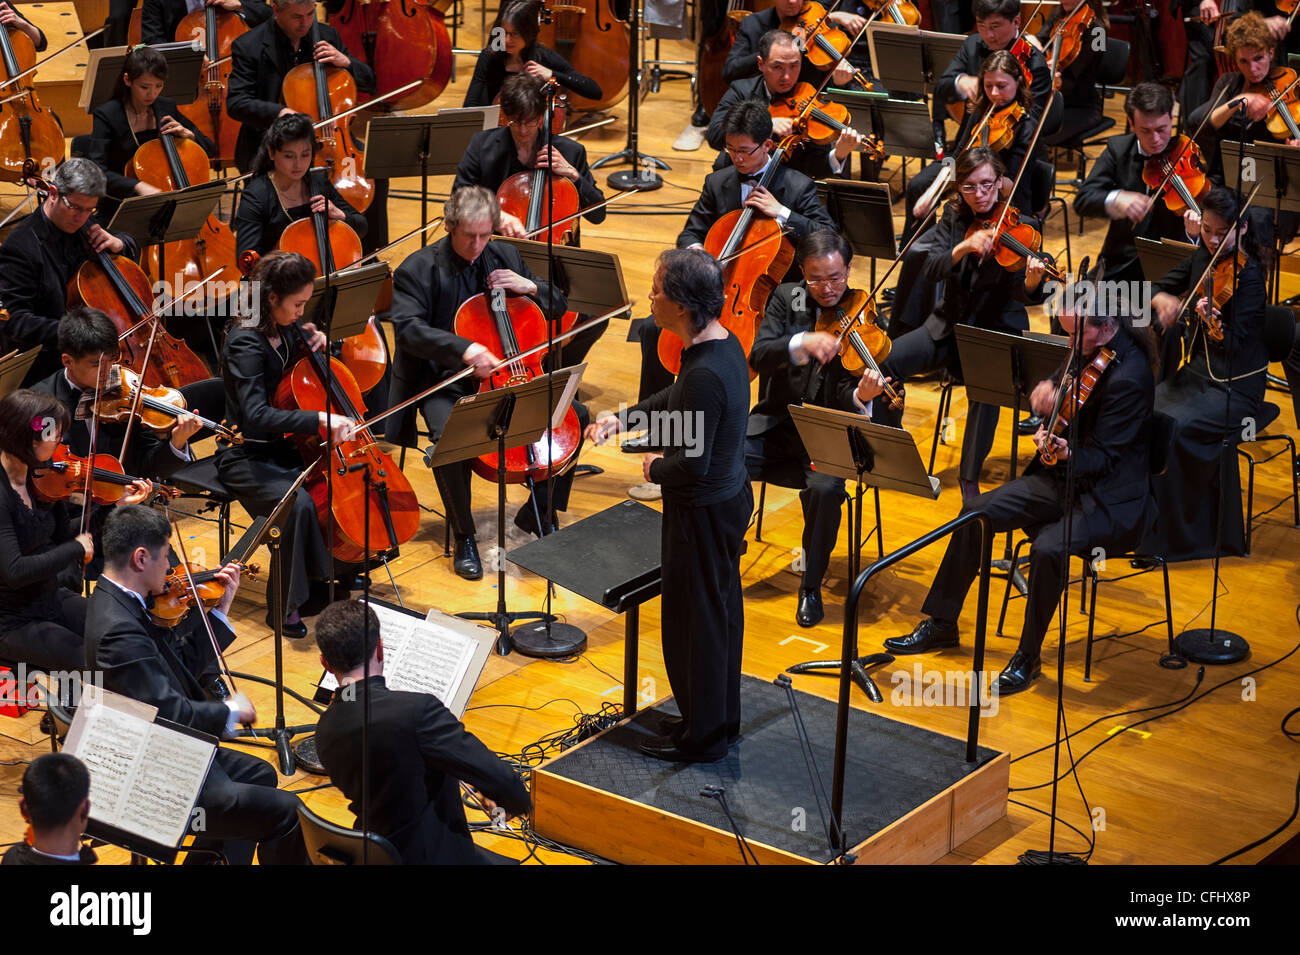 La orquesta unhasu fotografías e imágenes de alta resolución - Alamy